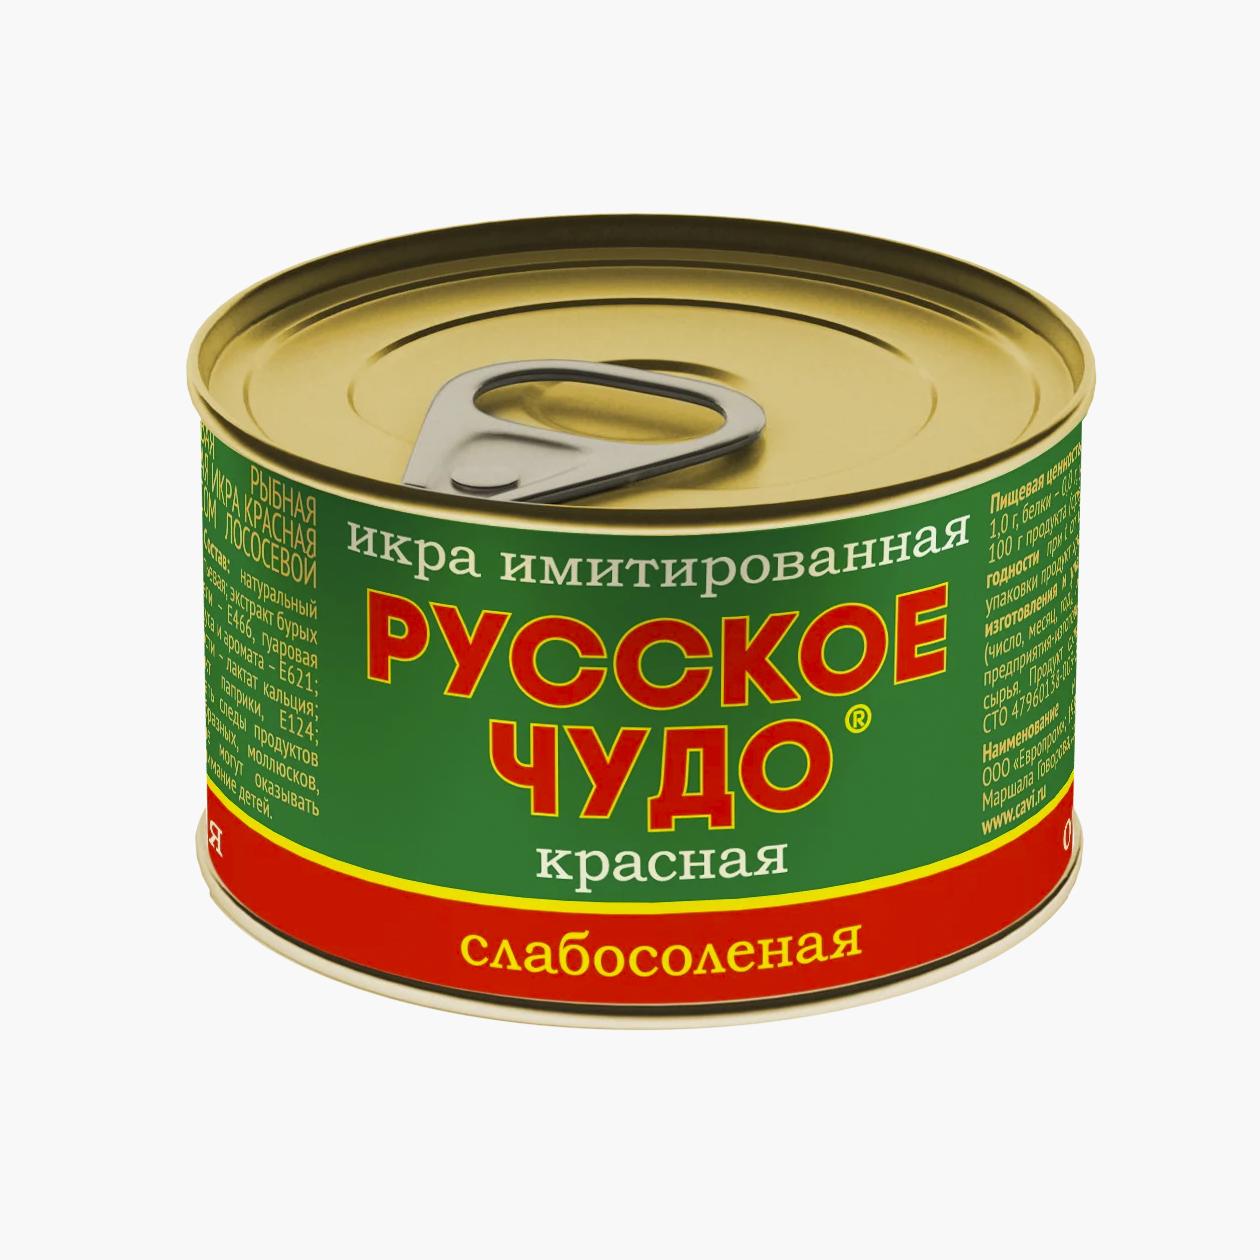 Баночка искусственной икры повторяет дизайн упаковки натурального продукта. Источник: perekrestok.ru